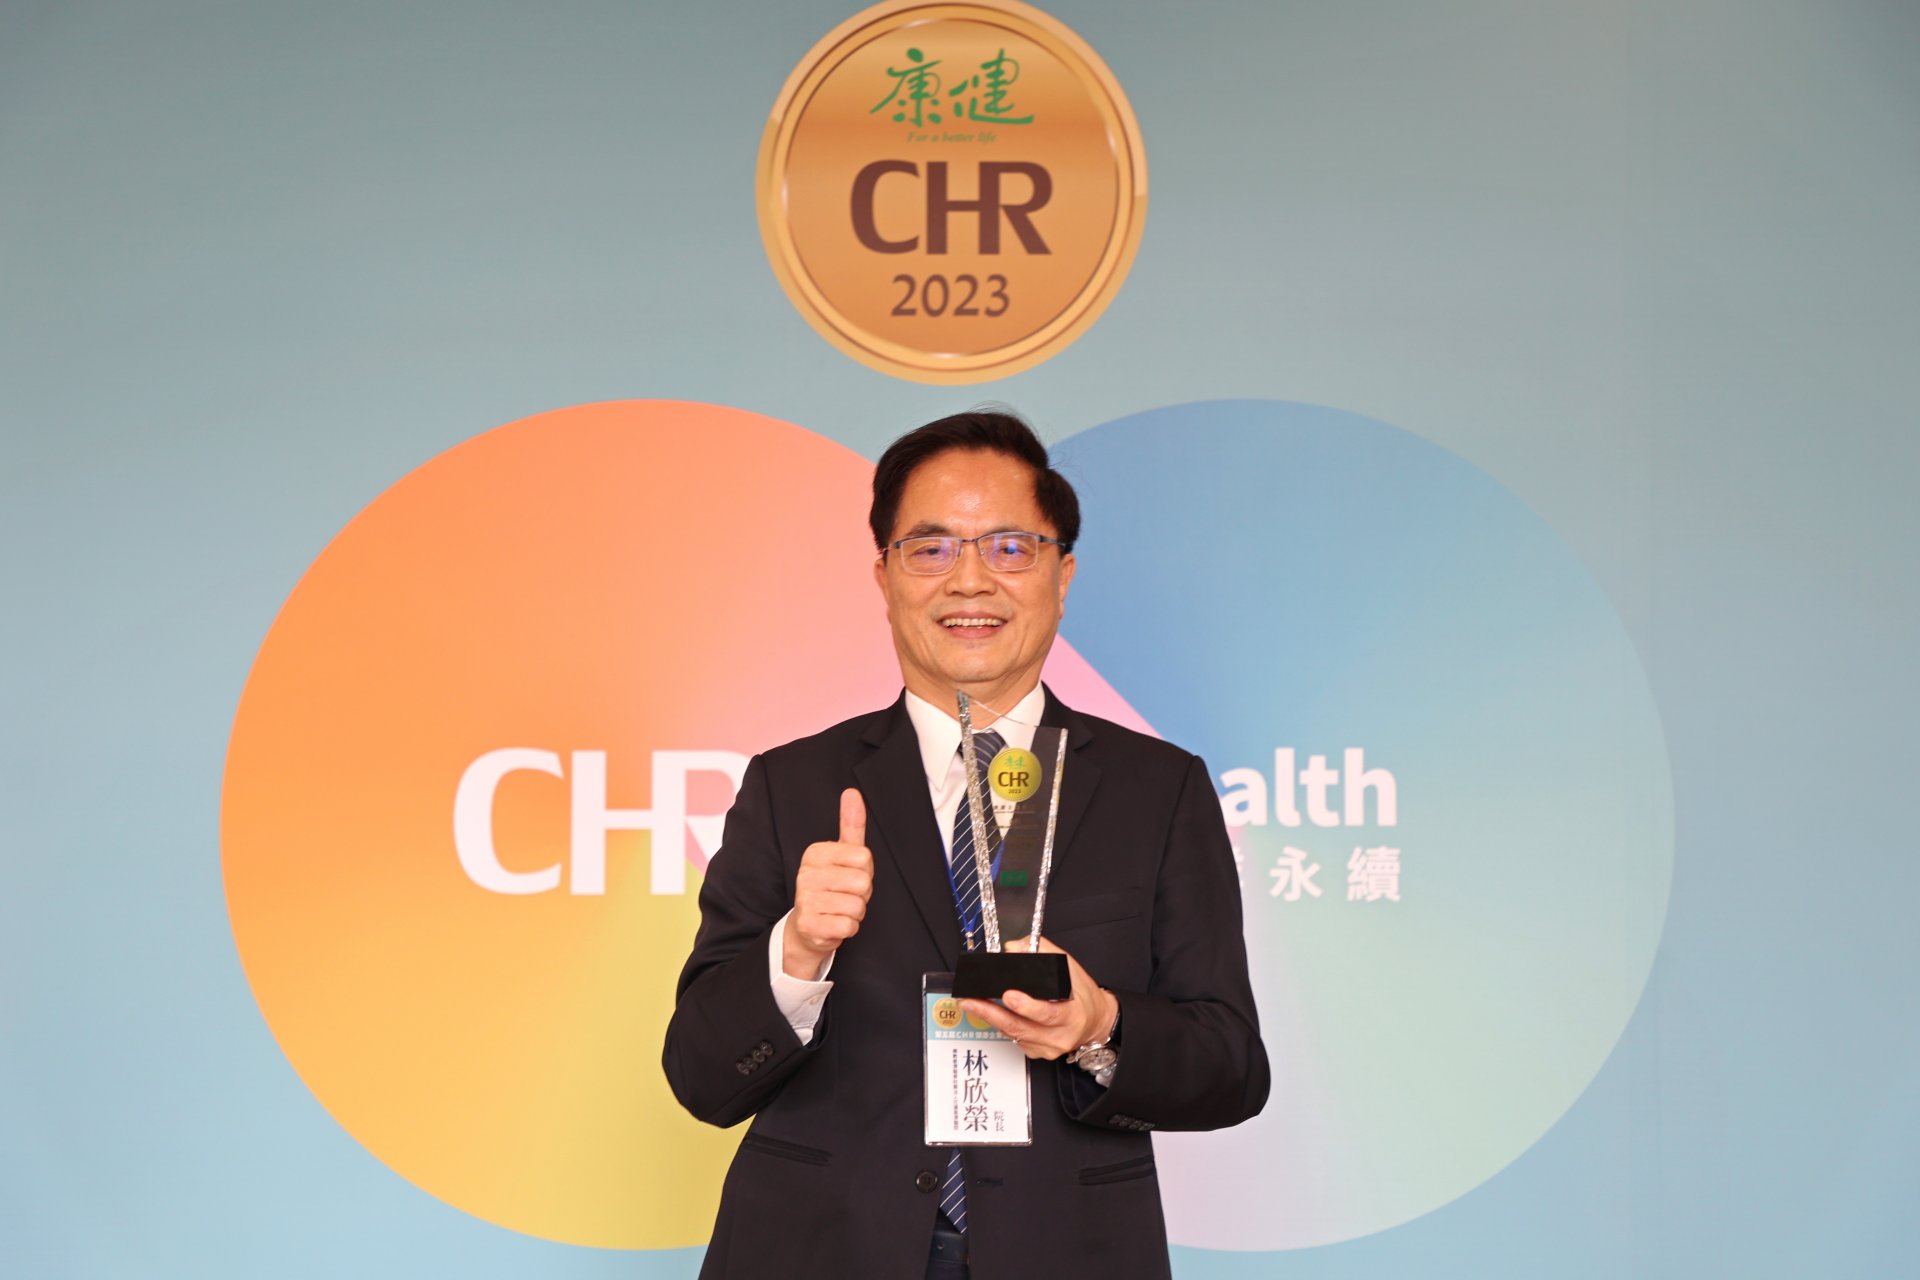 林欣榮院長表示此次獲得康健雜誌CHR健康幸福企業公民-金獎，是對全院同仁的肯定，期許持續發揮專業守護東臺灣民眾的生命健康。